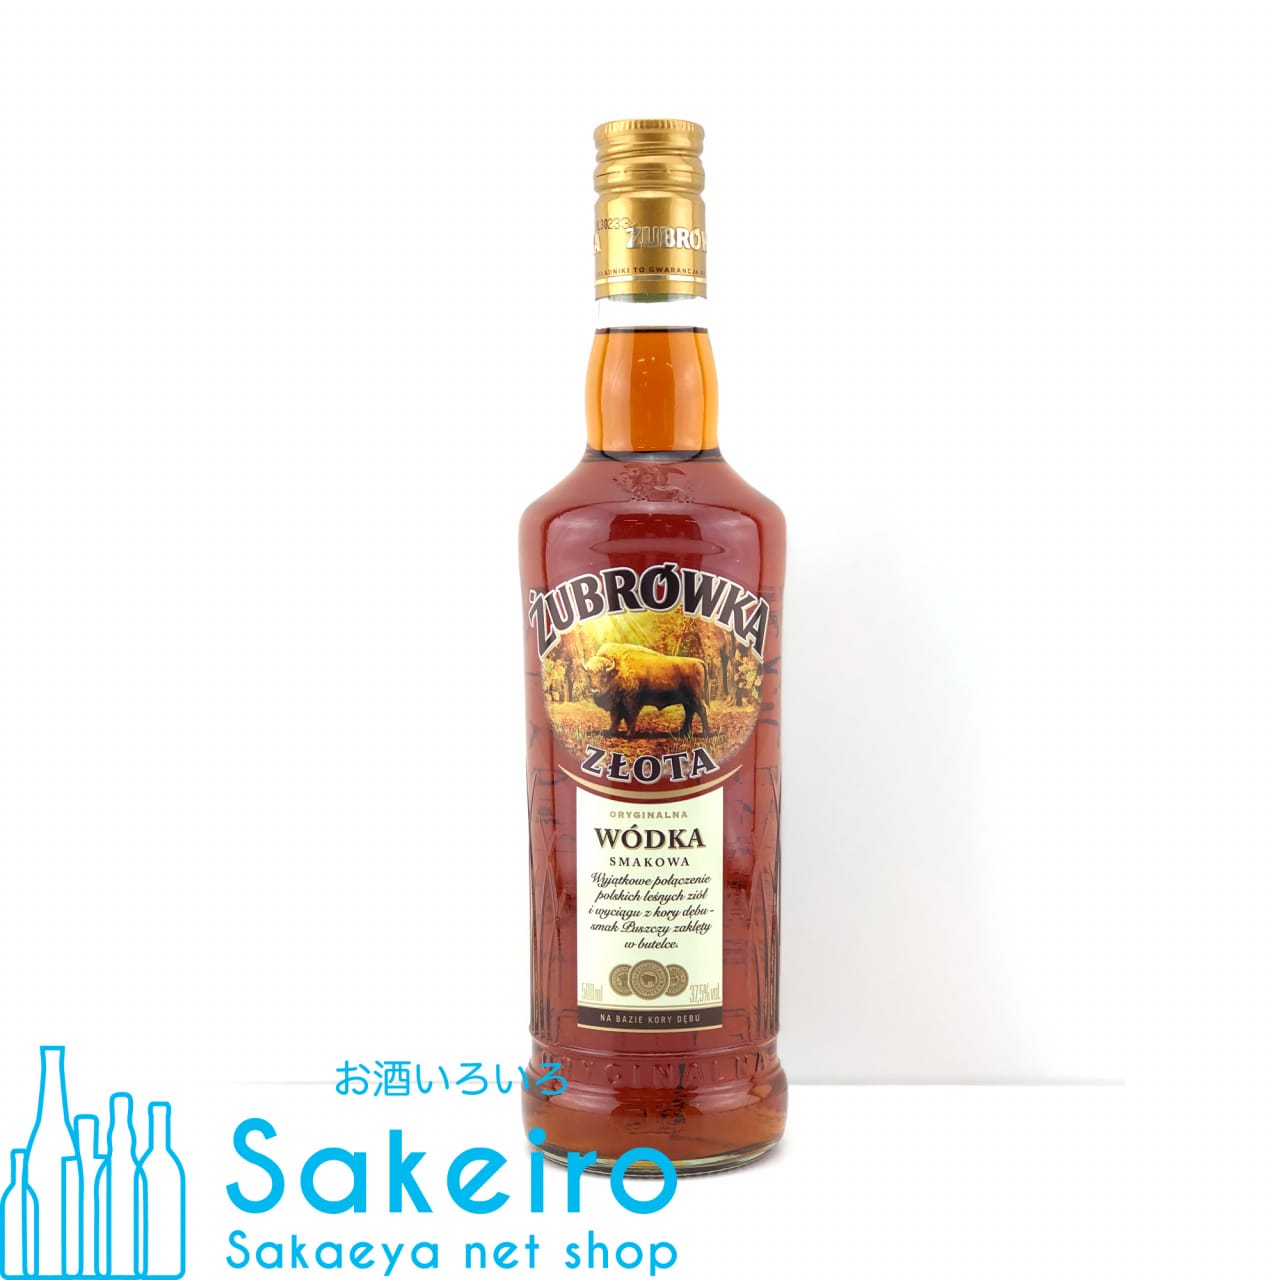 ズブロッカ バイソンオーク ウォッカ 37.5% 500ml - お酒いろいろ Sakeiro -Sakaeya net shop-